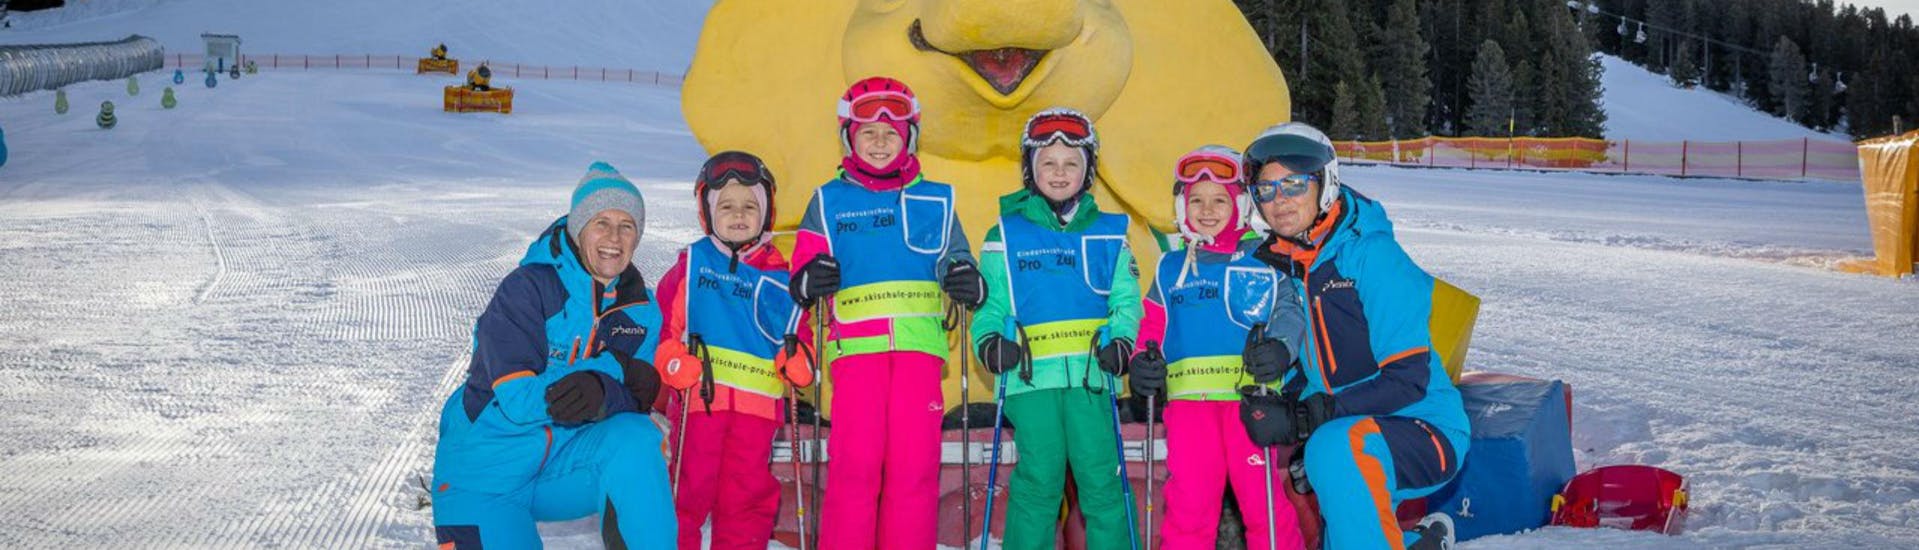 Een groep kinderen en hun twee skileraren van de skischool Skischule Pro Zell in Zell am Ziller poseren voor een foto in het Kinderland gebied tijdens hun privé skilessen voor kinderen.